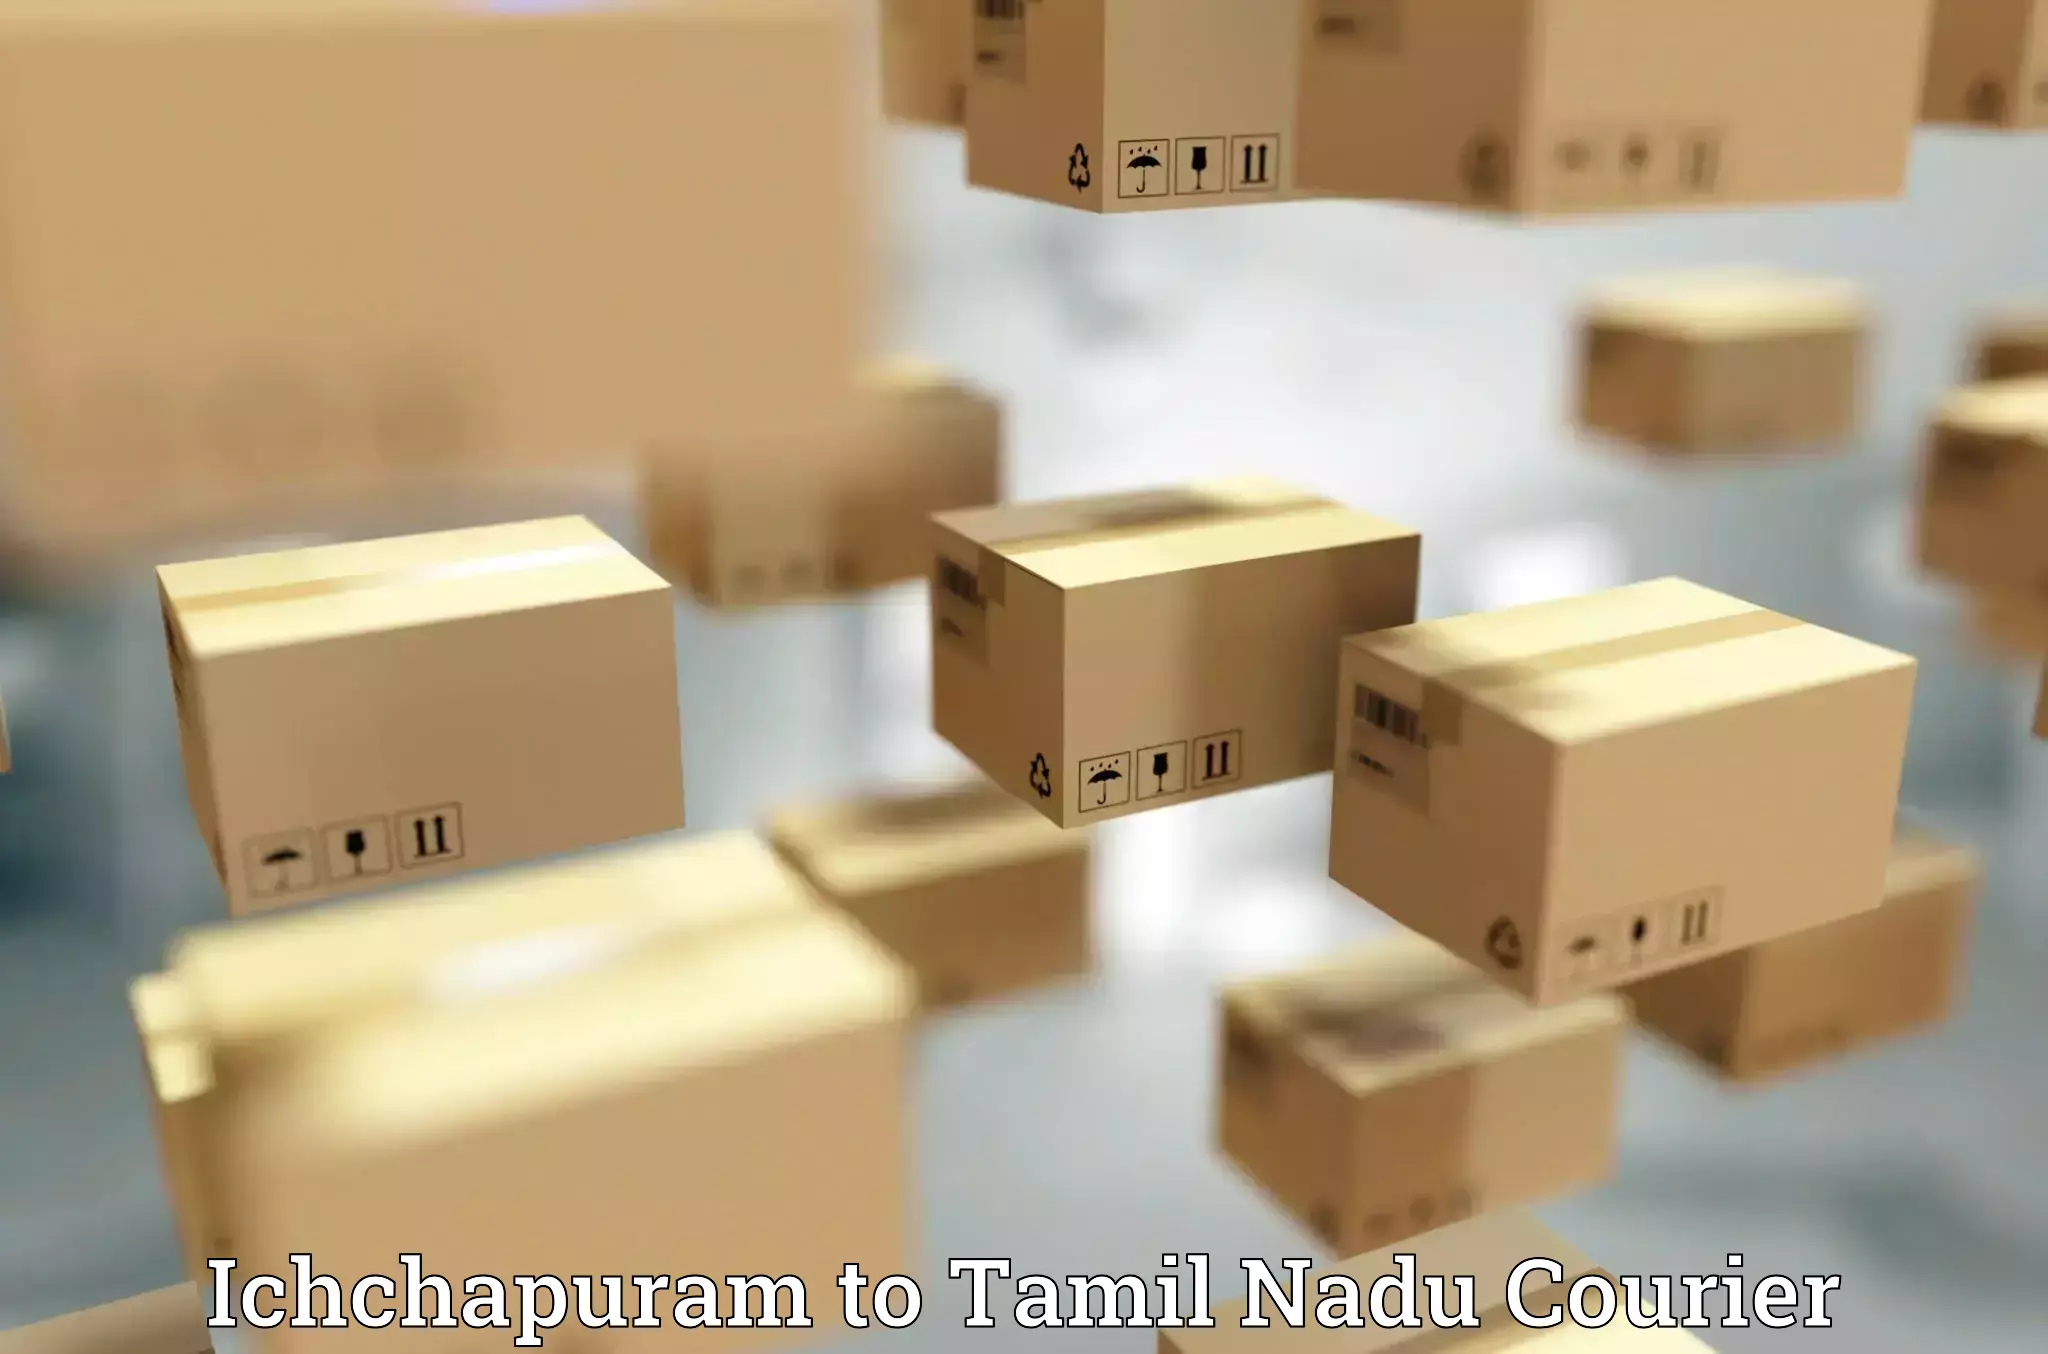 Nationwide courier service Ichchapuram to Kalpakkam